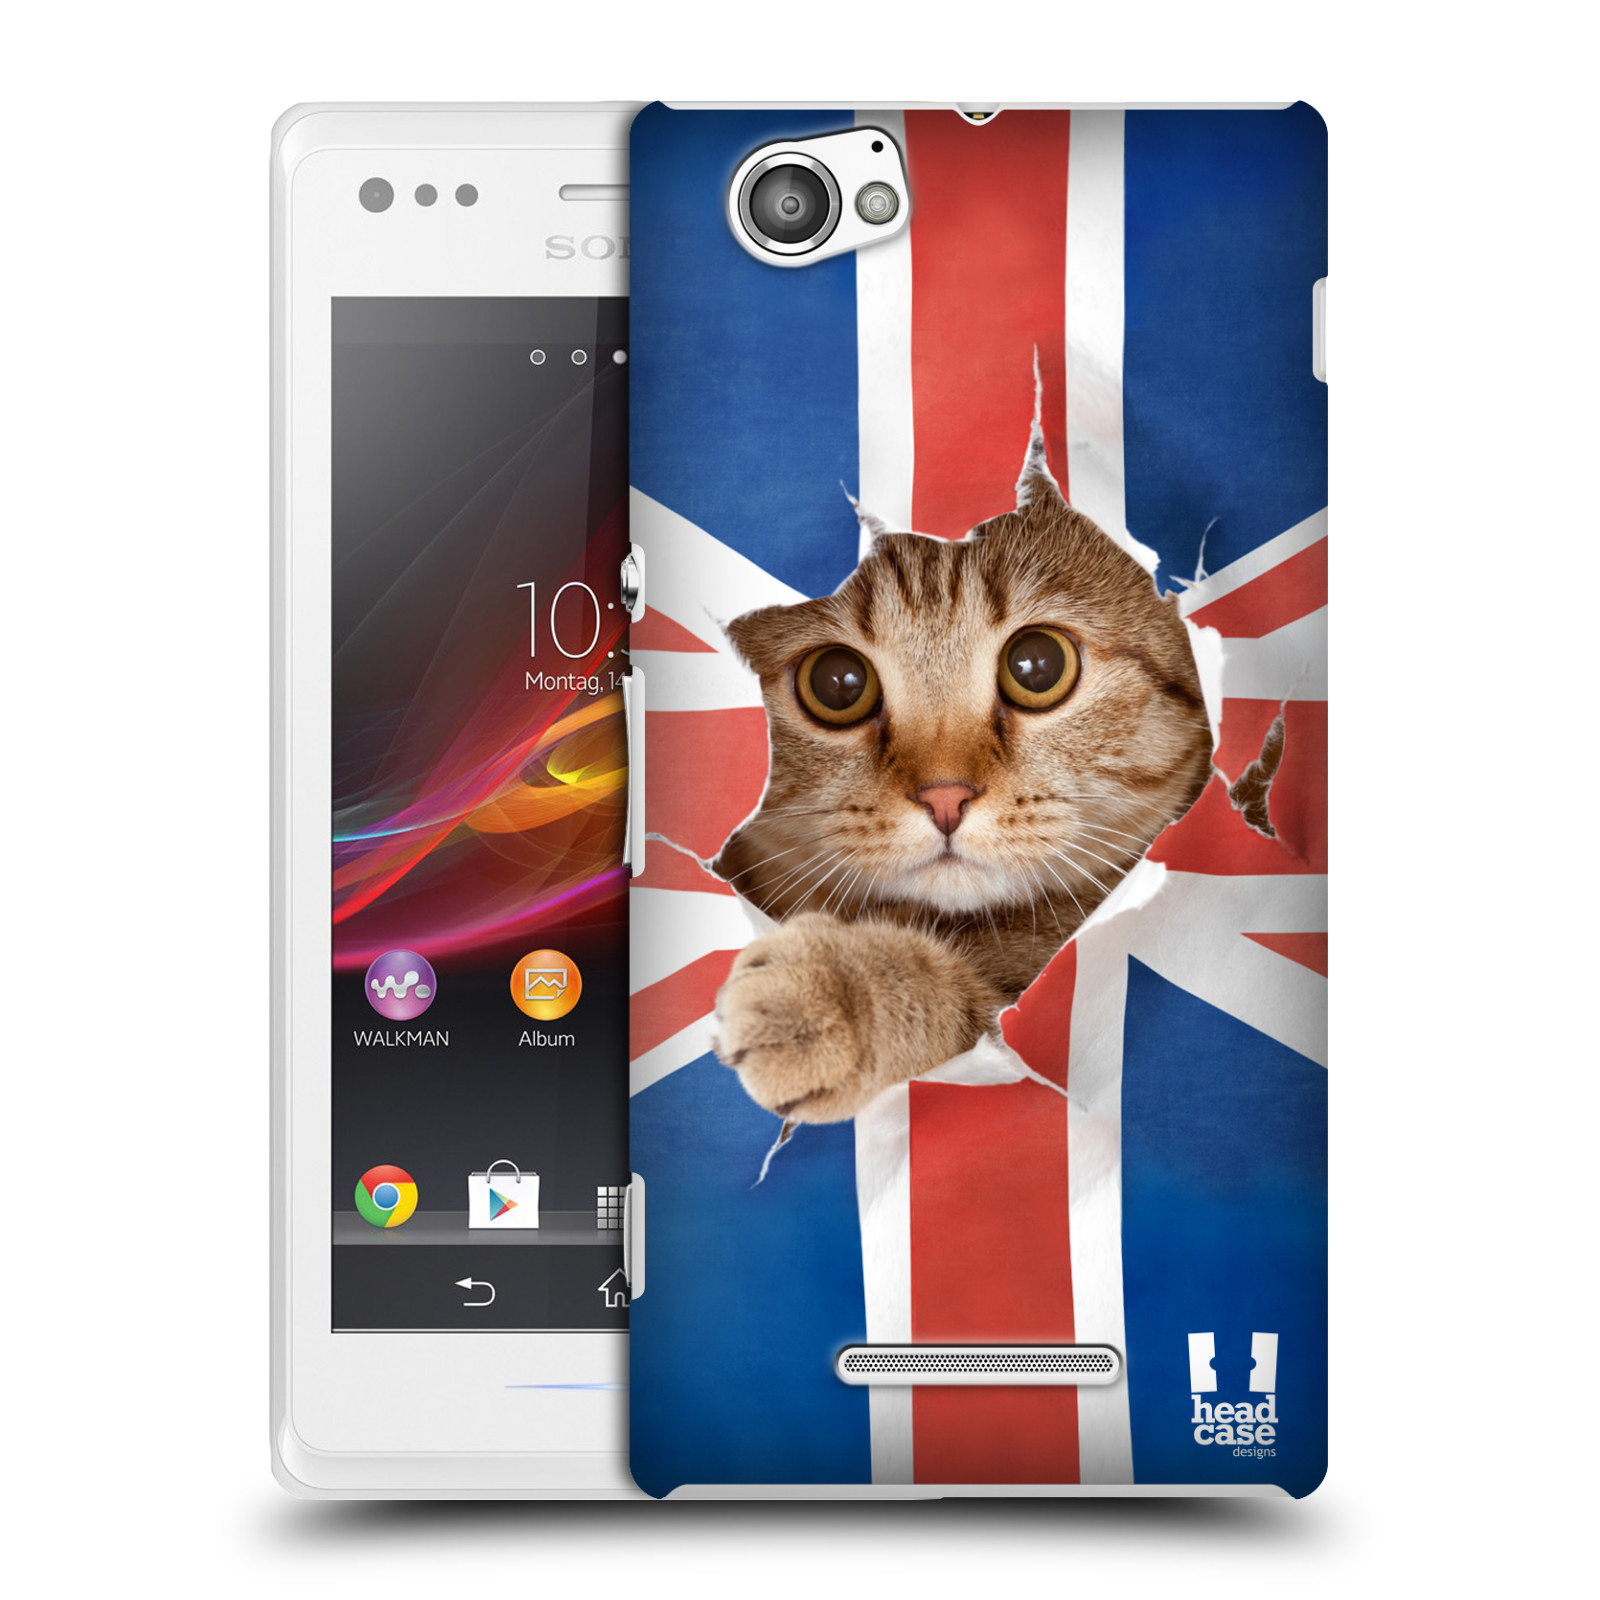 HEAD CASE plastový obal na mobil Sony Xperia M vzor Legrační zvířátka kočička a Velká Británie vlajka